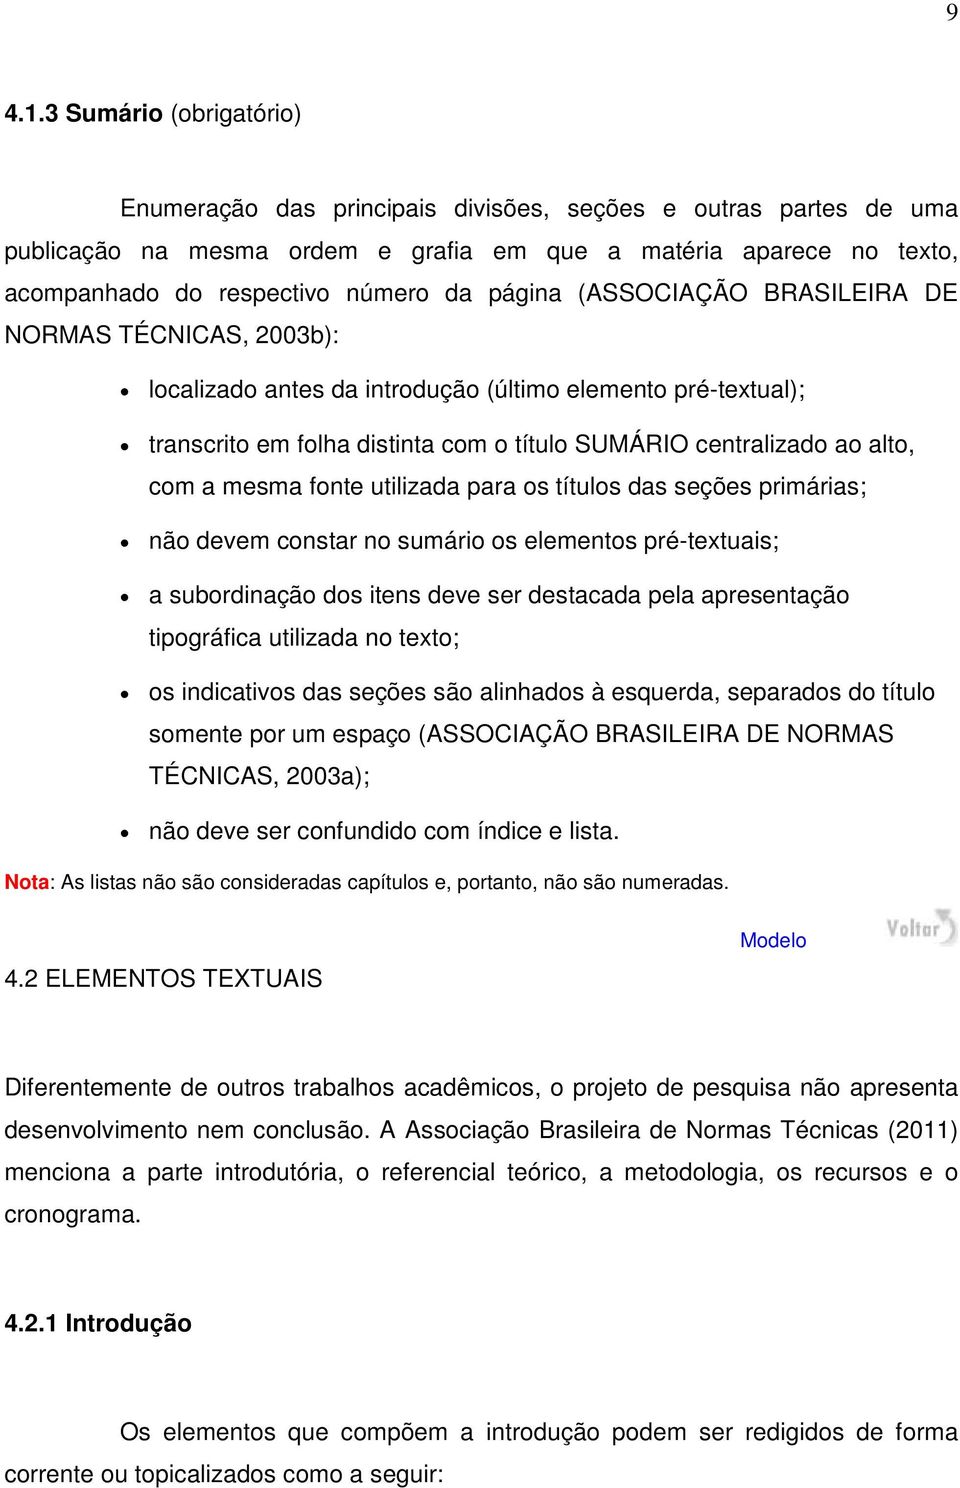 página (ASSOCIAÇÃO BRASILEIRA DE NORMAS TÉCNICAS, 2003b): localizado antes da introdução (último elemento pré-textual); transcrito em folha distinta com o título SUMÁRIO centralizado ao alto, com a